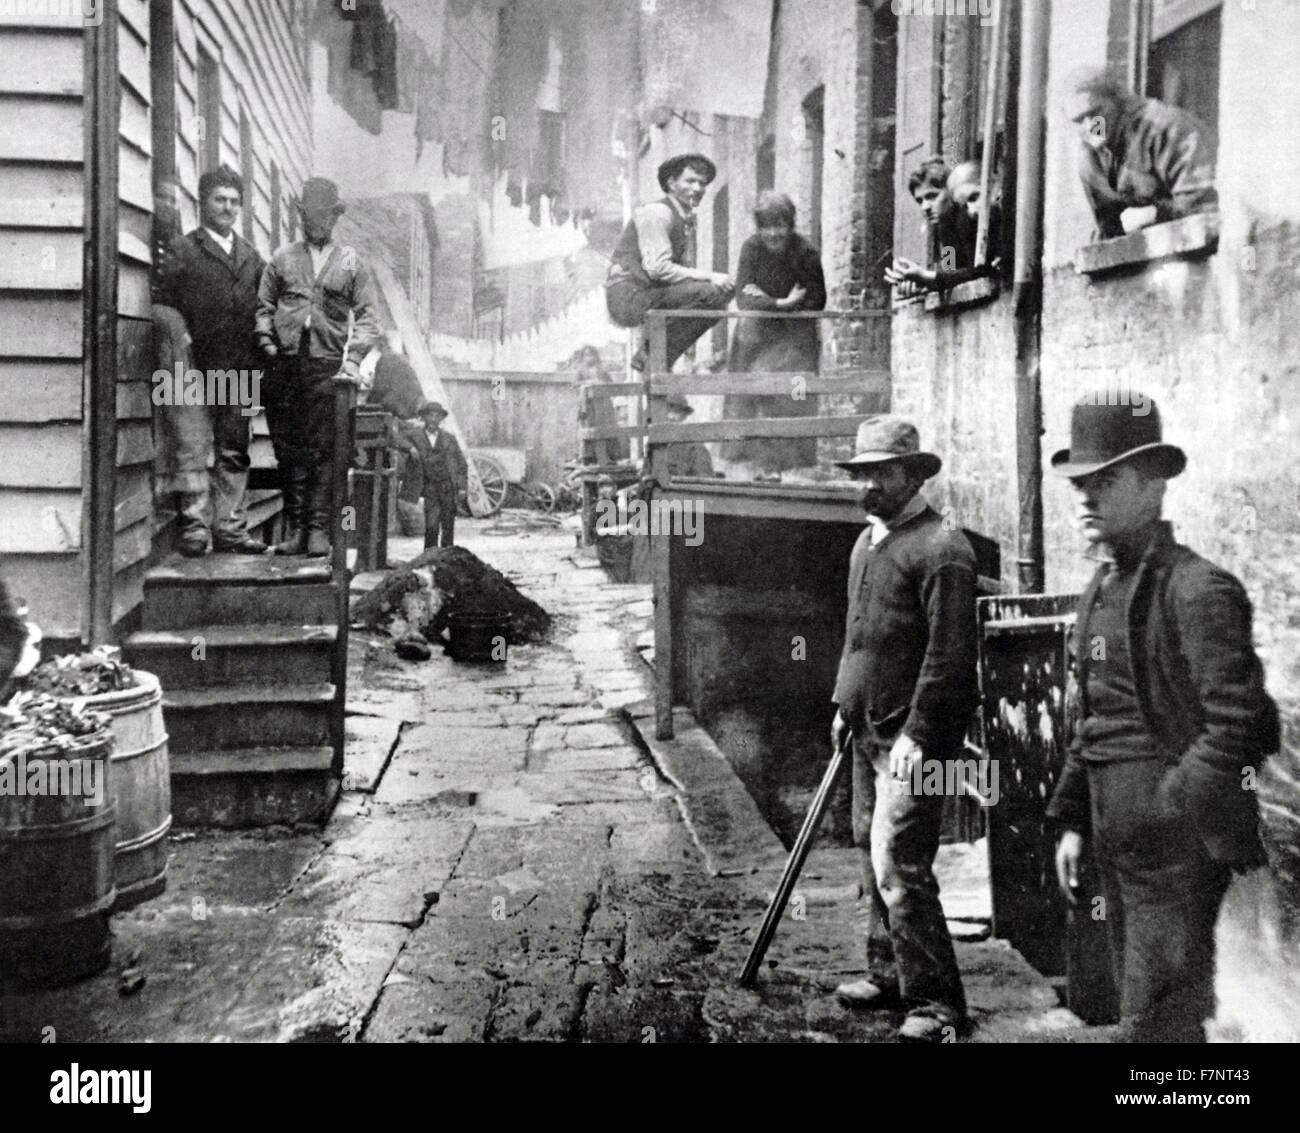 Foto von Banditen Roost von dänischen amerikanischen Sozialreformer Jacob Riis (1849-1914), "muckraking" Journalist und sozialen Dokumentarfotograf. Datiert 1890 Stockfoto